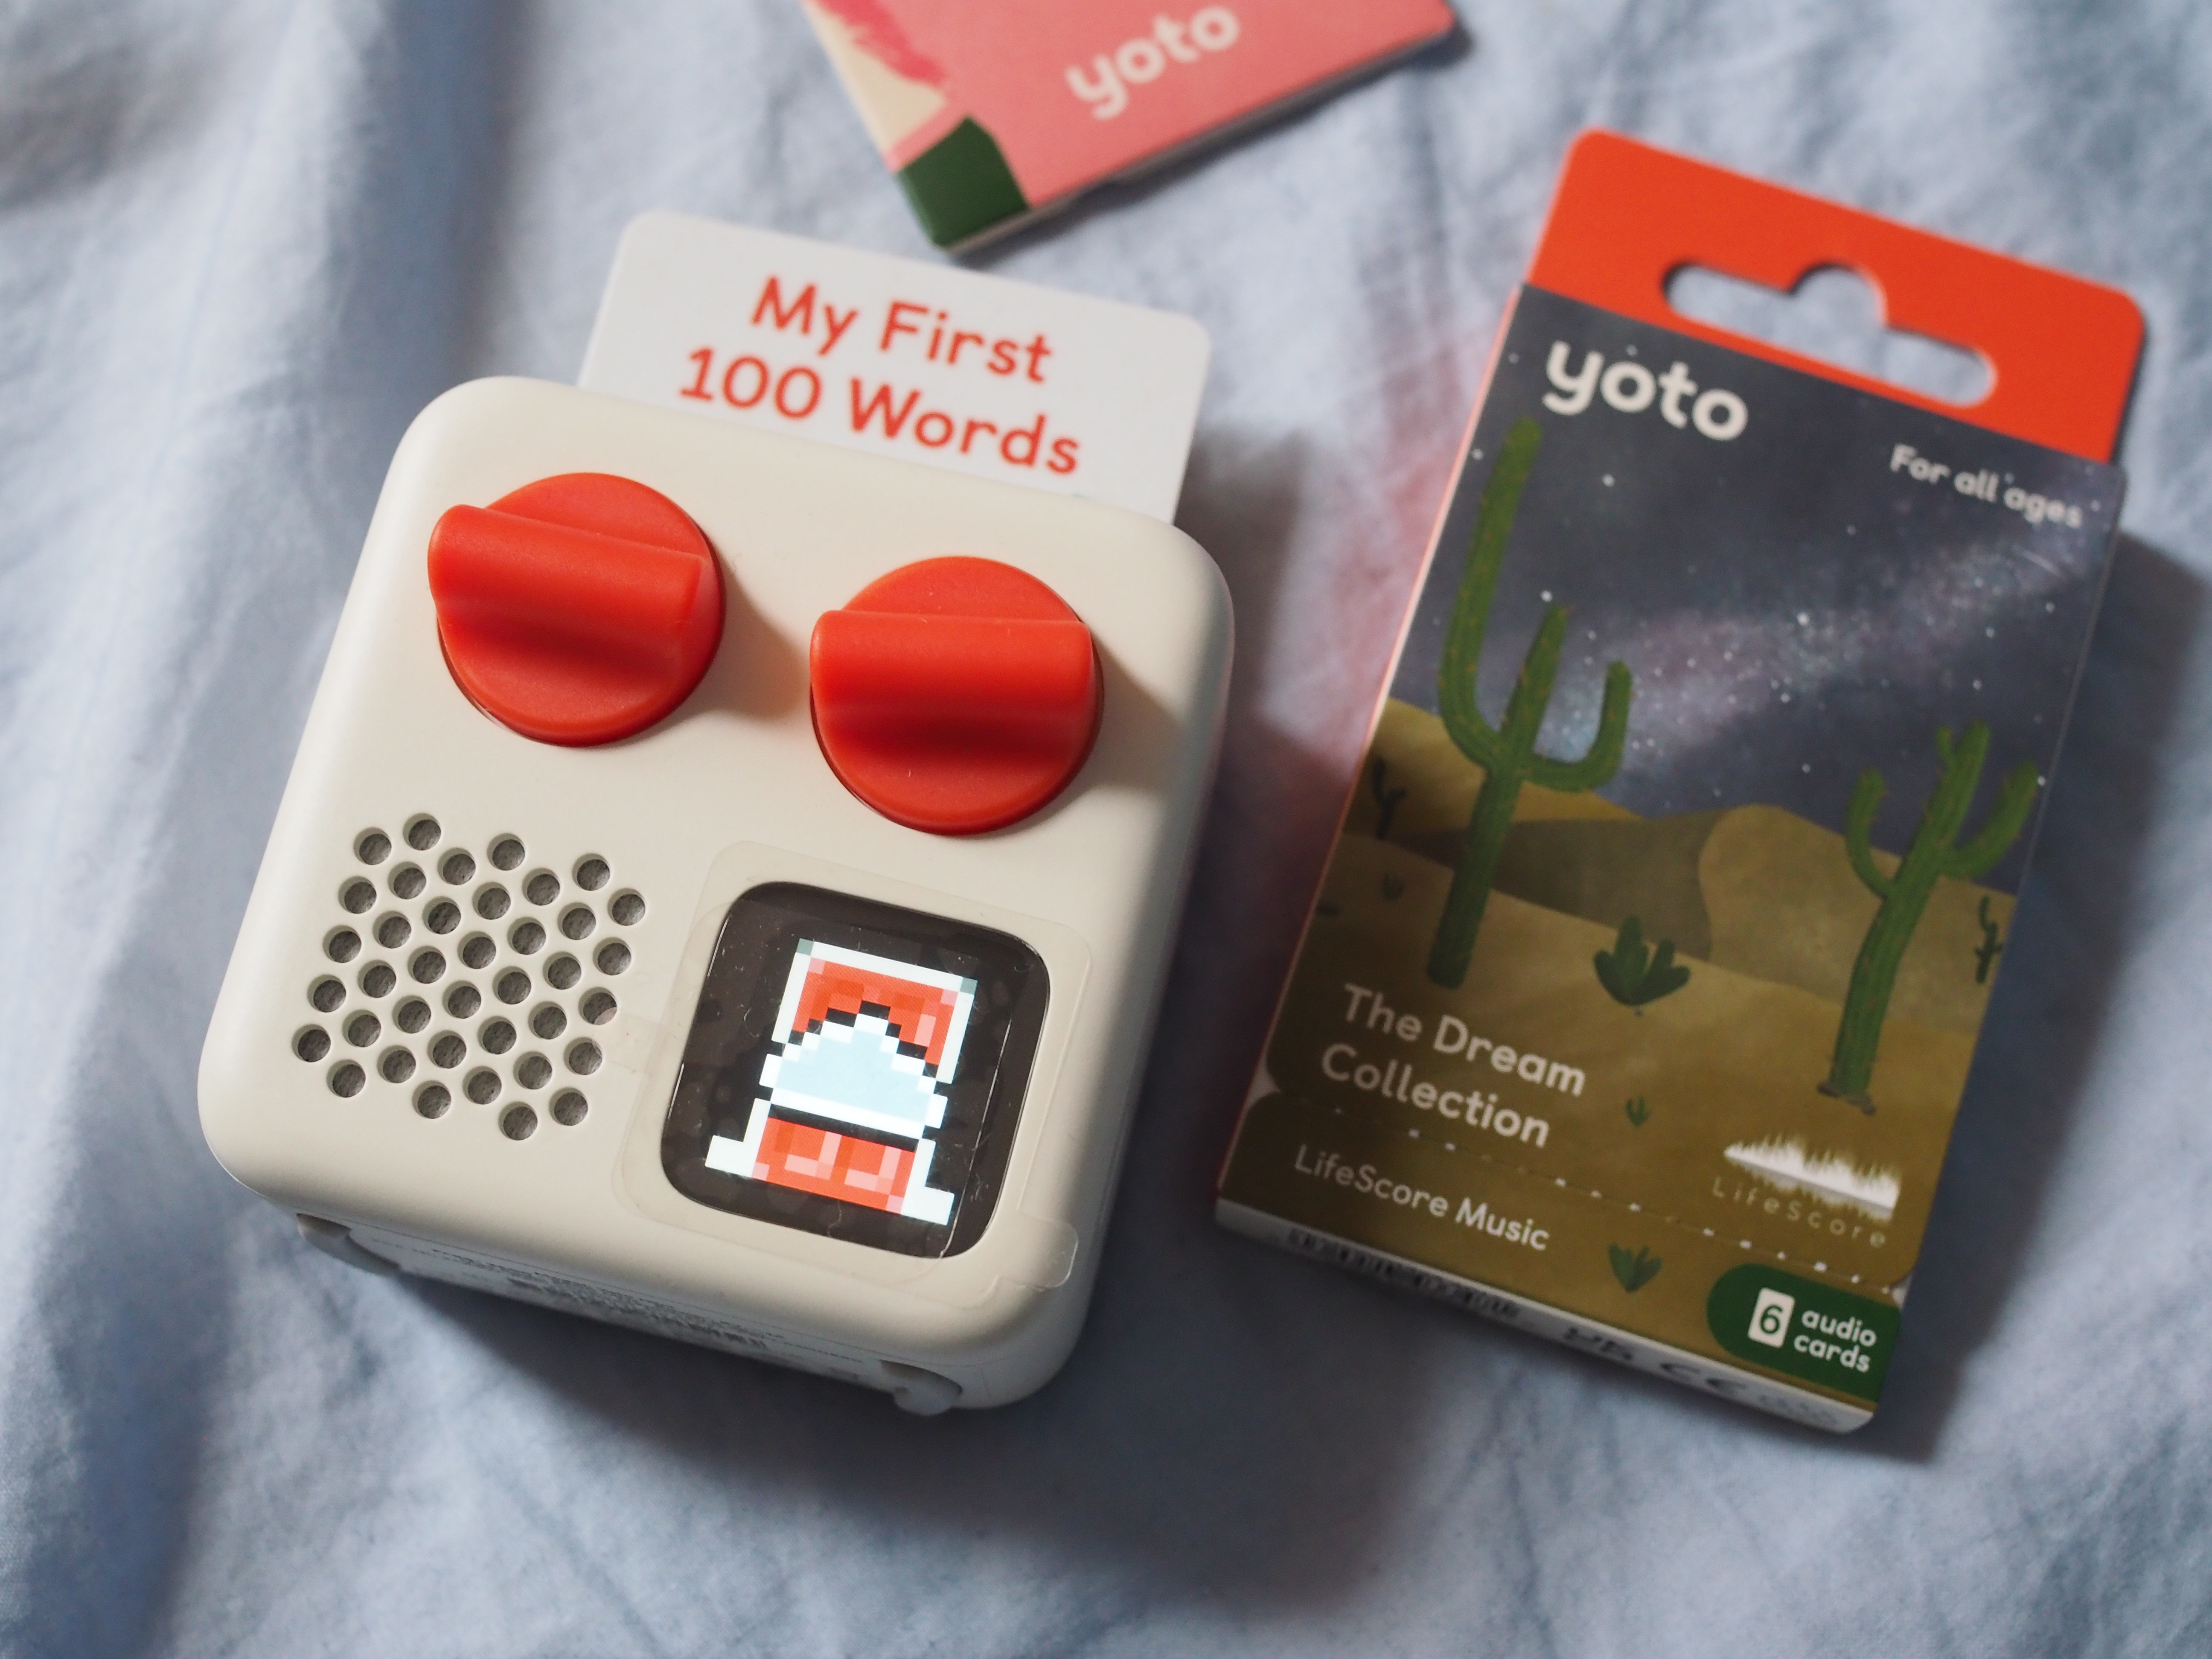 yoto mini and dreams card